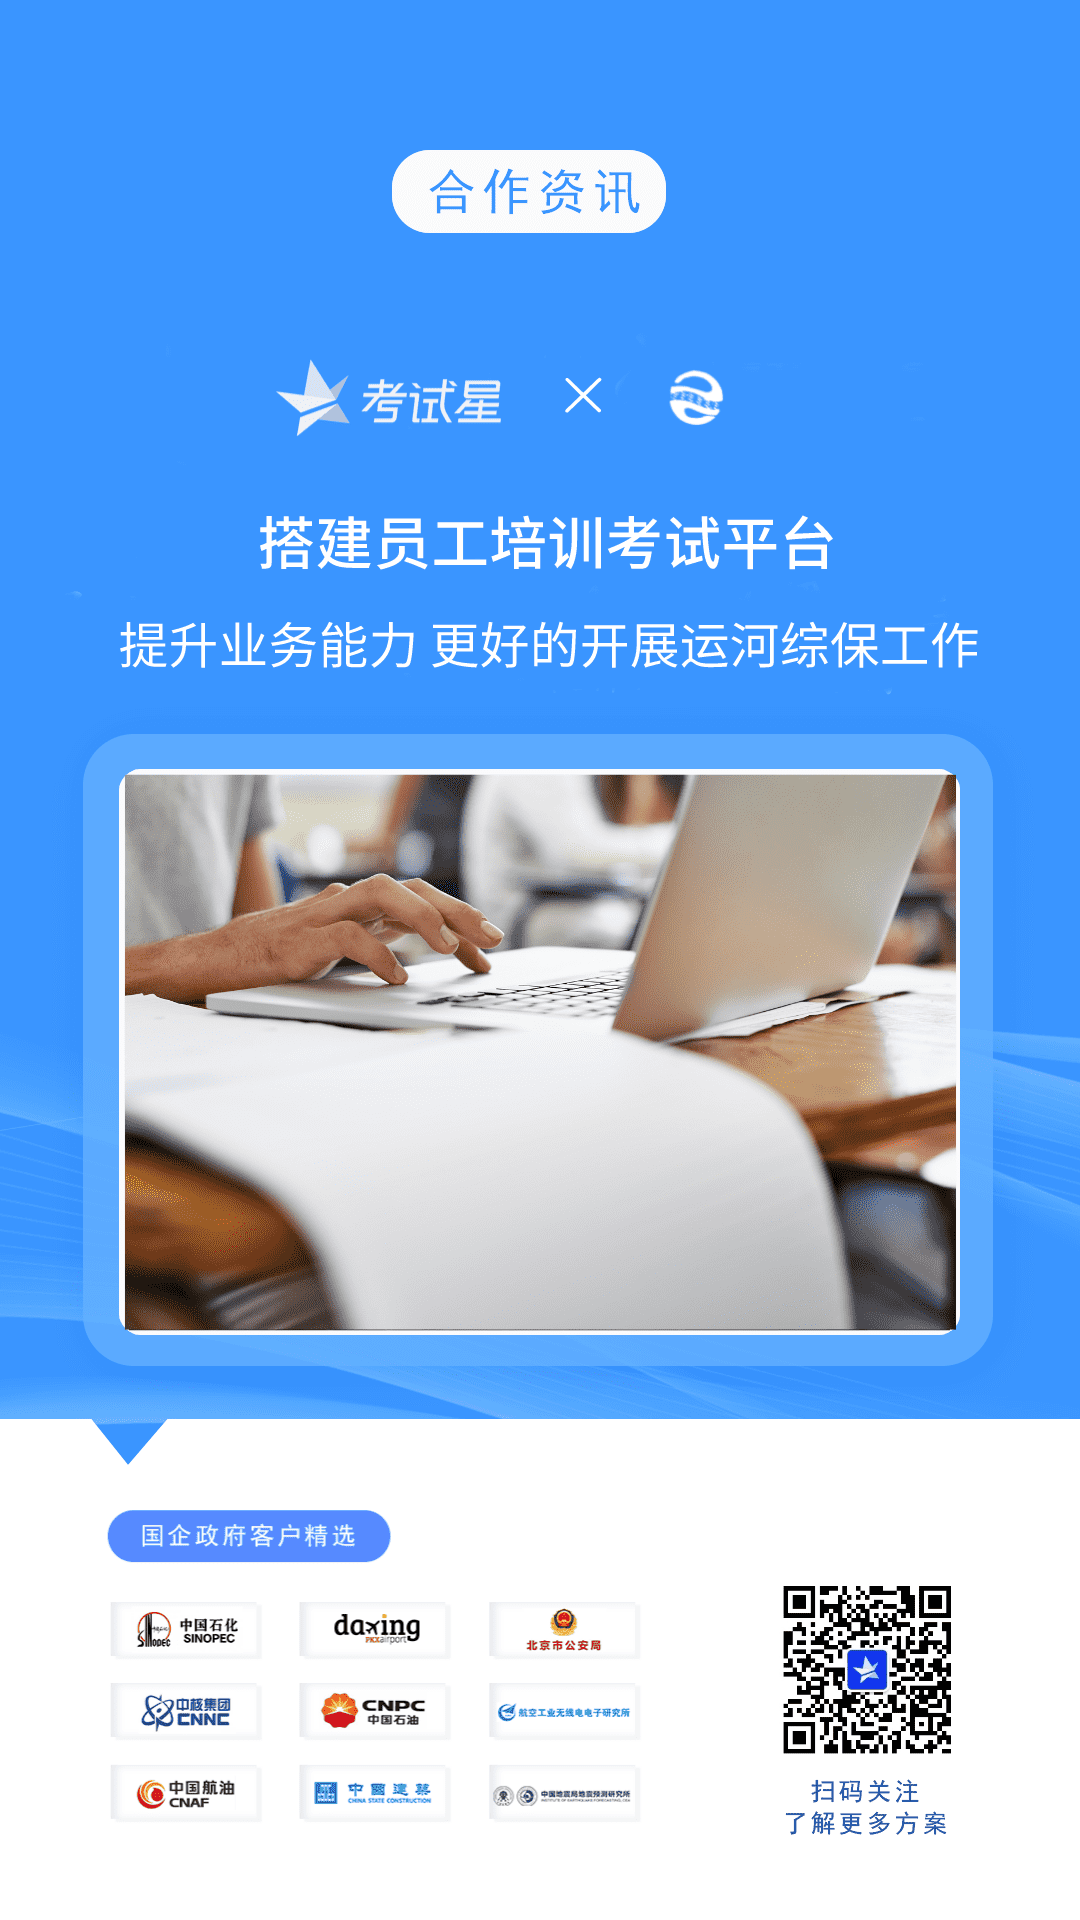 杭州运河集团-考试星员工培训考试平台